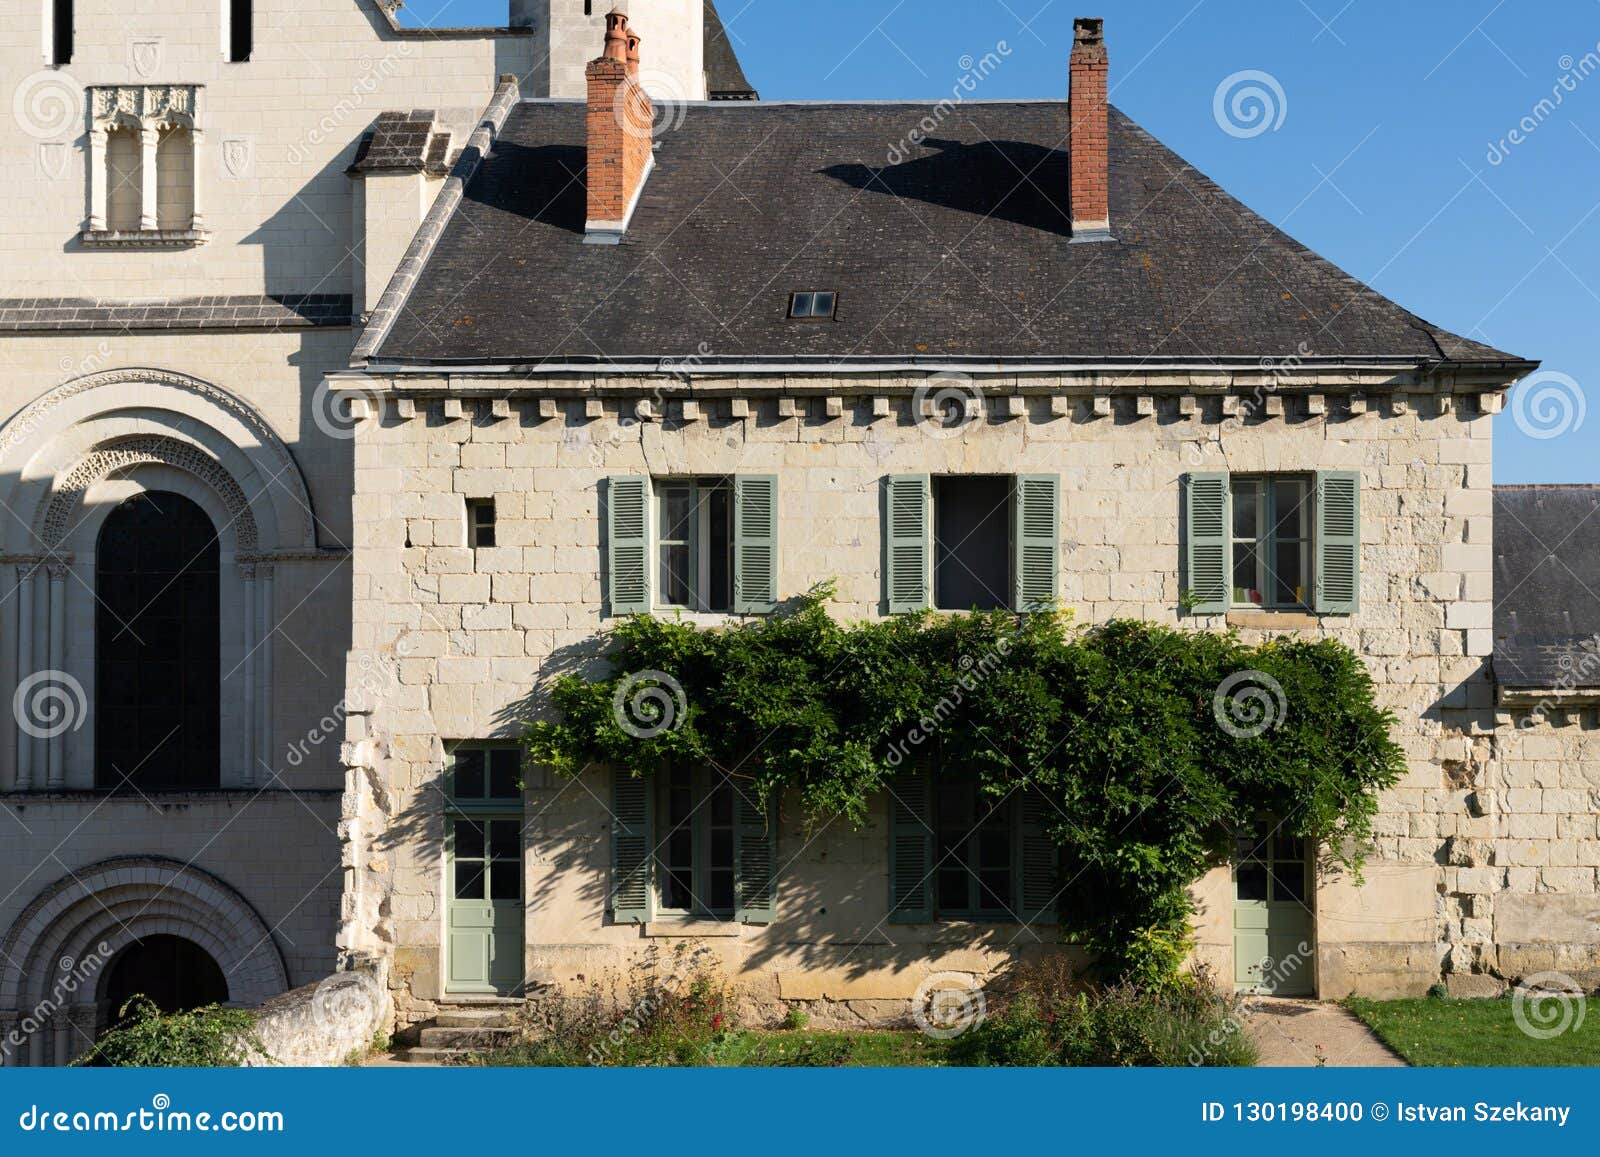 Il corpo di guardia dell'abbazia di Fontevraud L'abbazia reale di Fontevraud, situata sui confini delle tre province di Poitou, l'Anjou e Touraine, è una di più grandi città monastiche ha ereditato dai medio evo Monumento storico classificato dal 1840, è dal 2000, ha registrato con il patrimonio mondiale dell'Unesco con il tutto di Loire Valley In una valle verde alcuni chilometri dalla Loira,